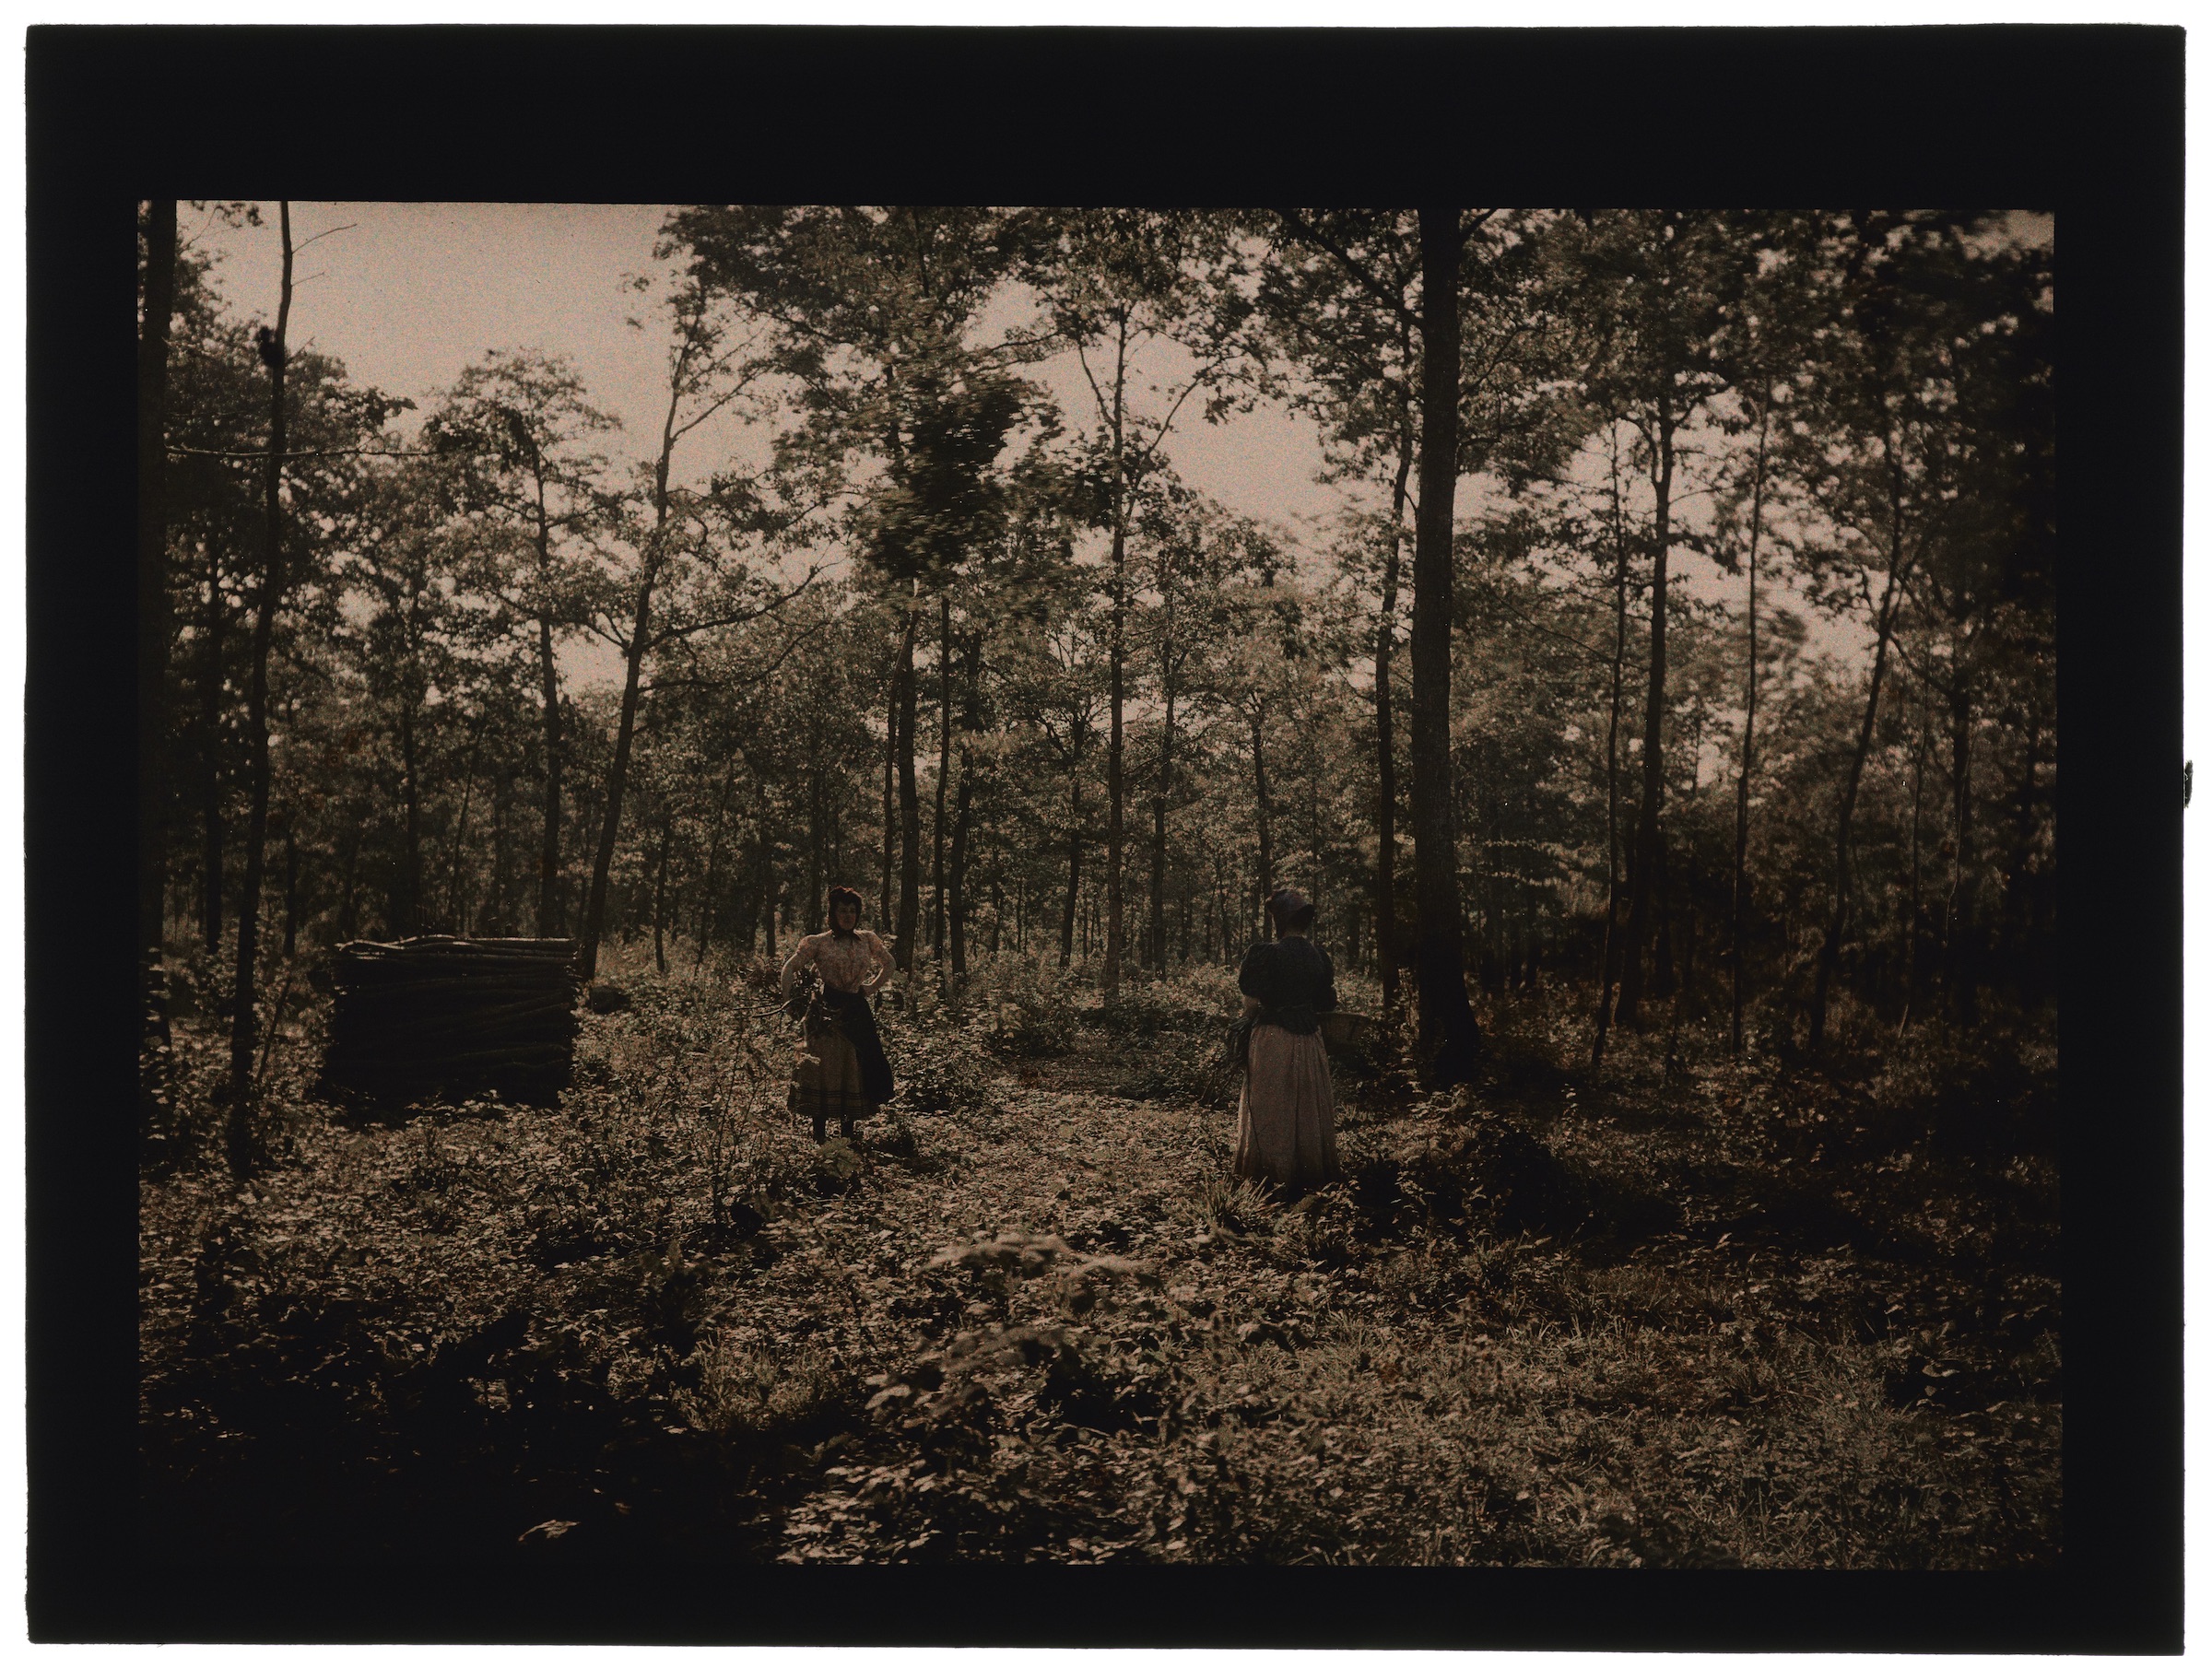 Deux femmes paysannes en forêt, pique-nique sur un tronc d'arbre